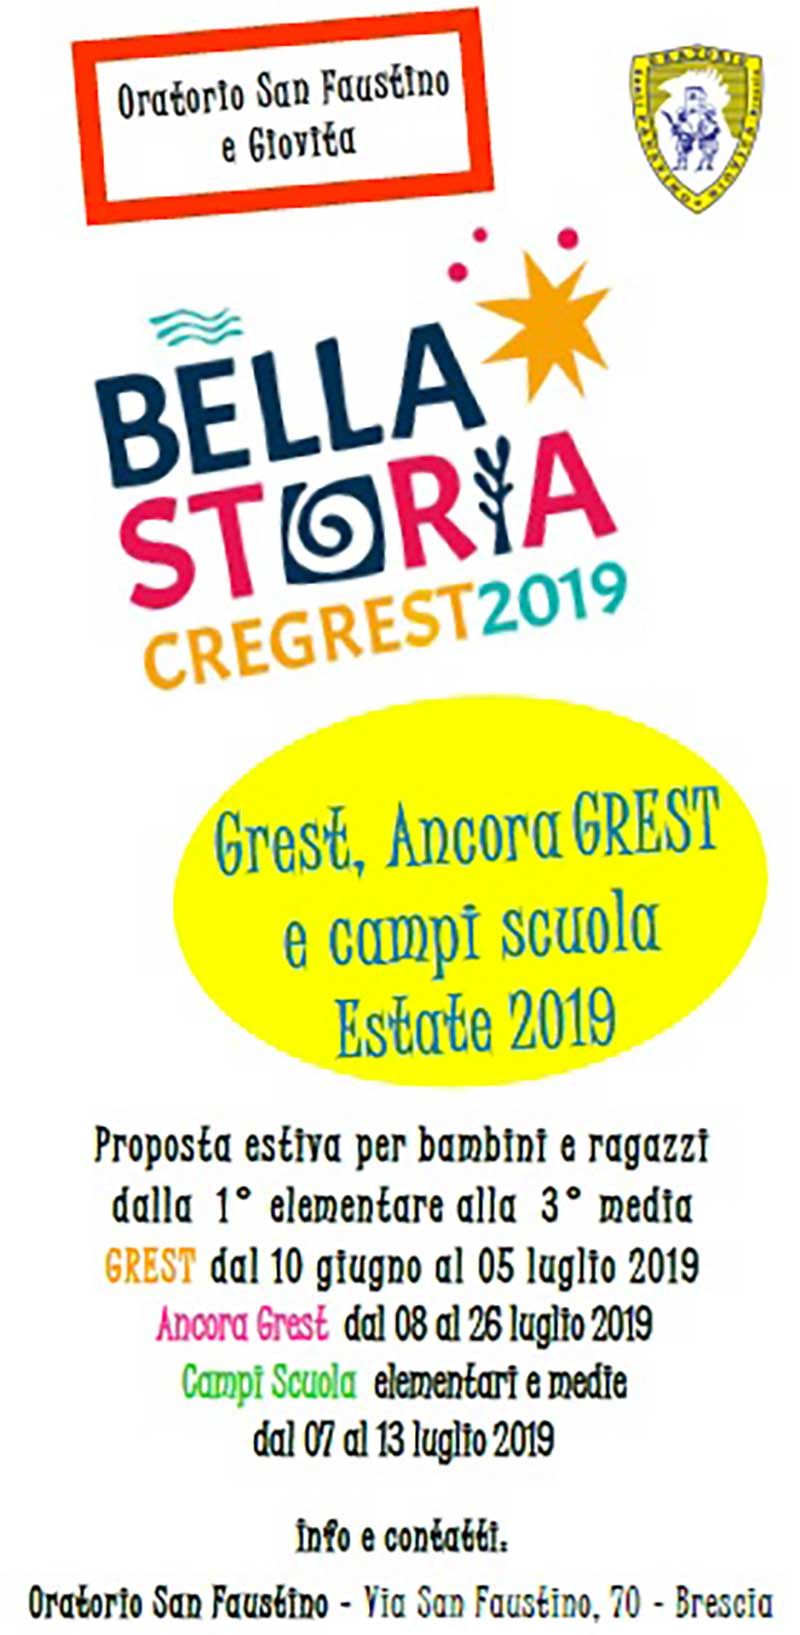 grest-2019-oratorio-san-faustino-brescia